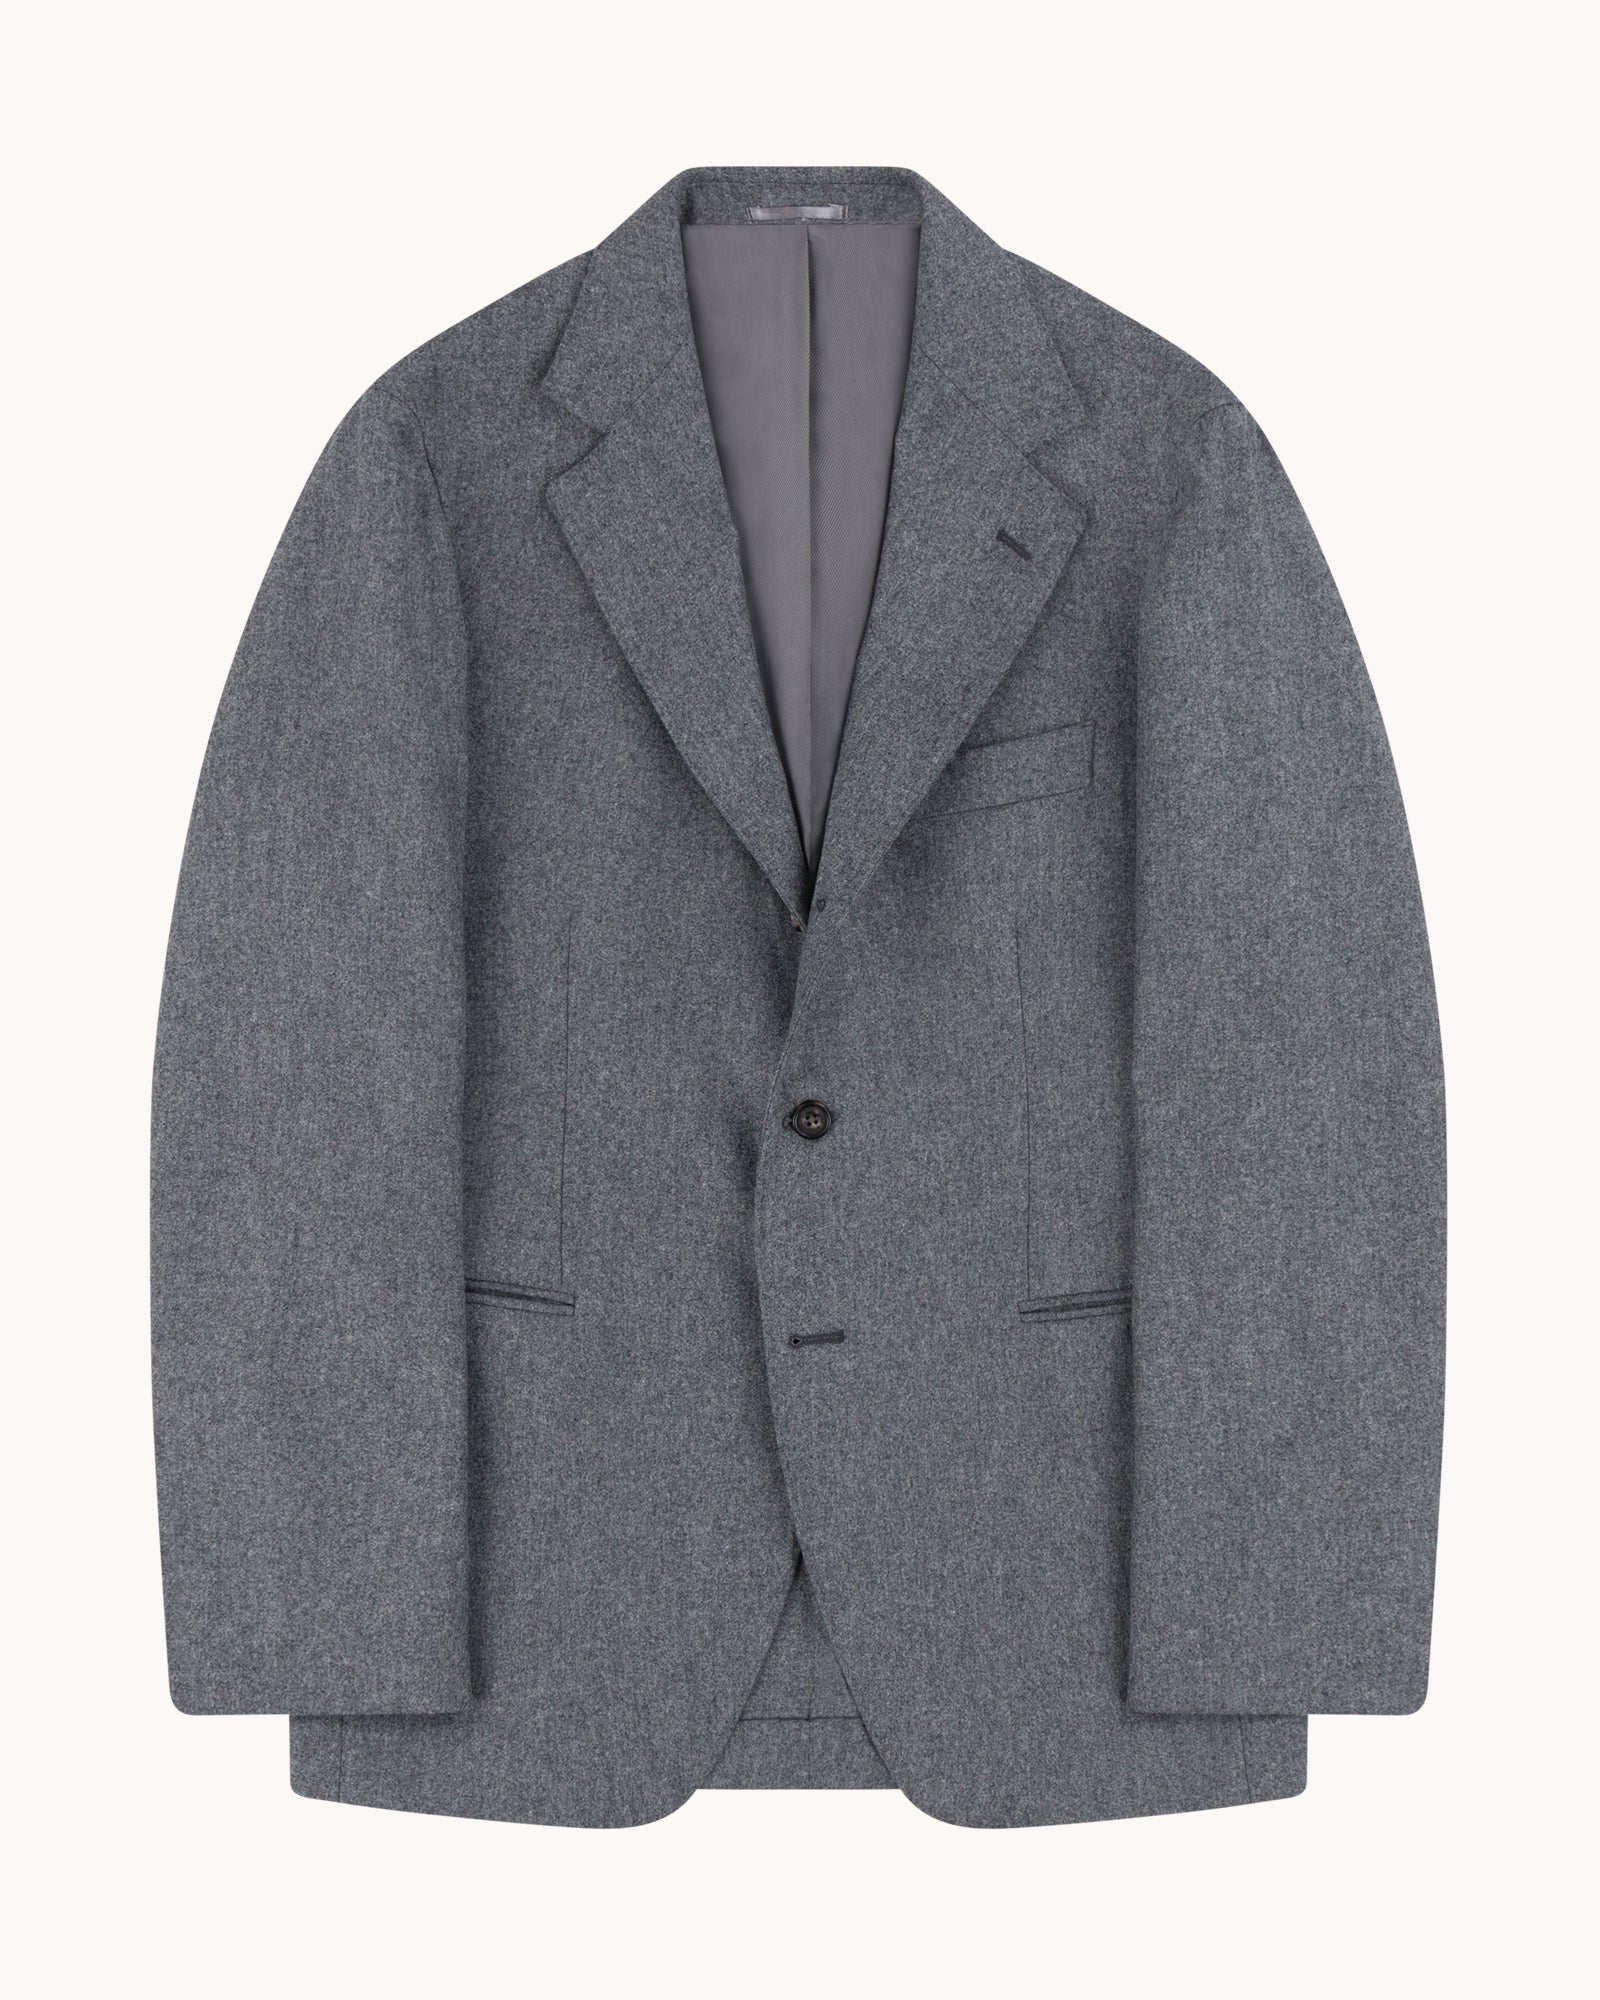 Sport Jacket - Light Grey Woollen Flannel